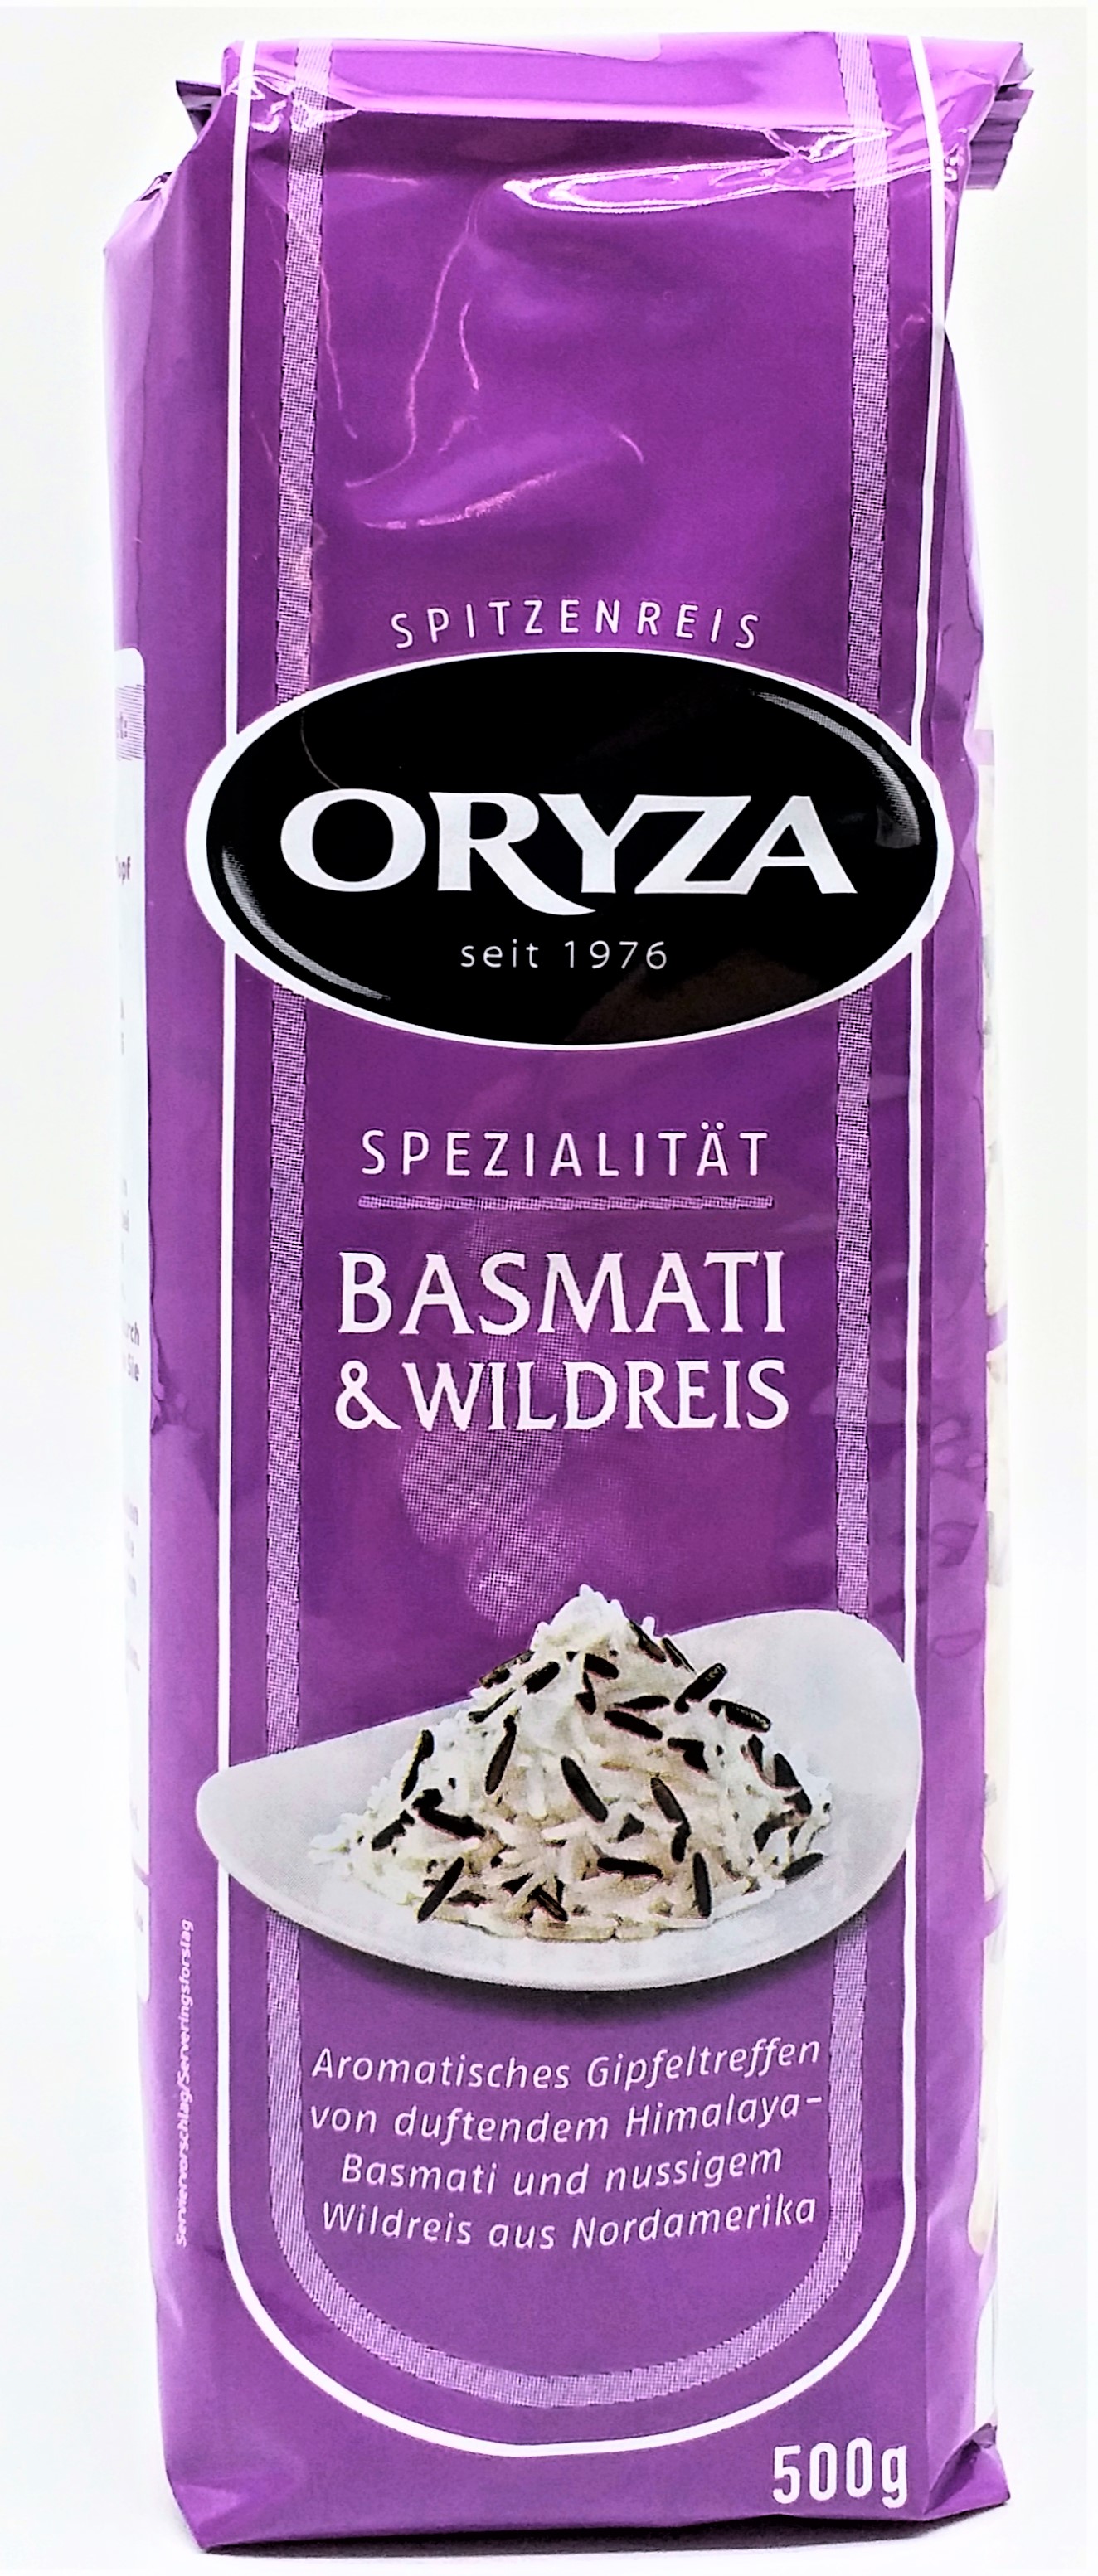 Oryza Basmati und Wildreis 500g